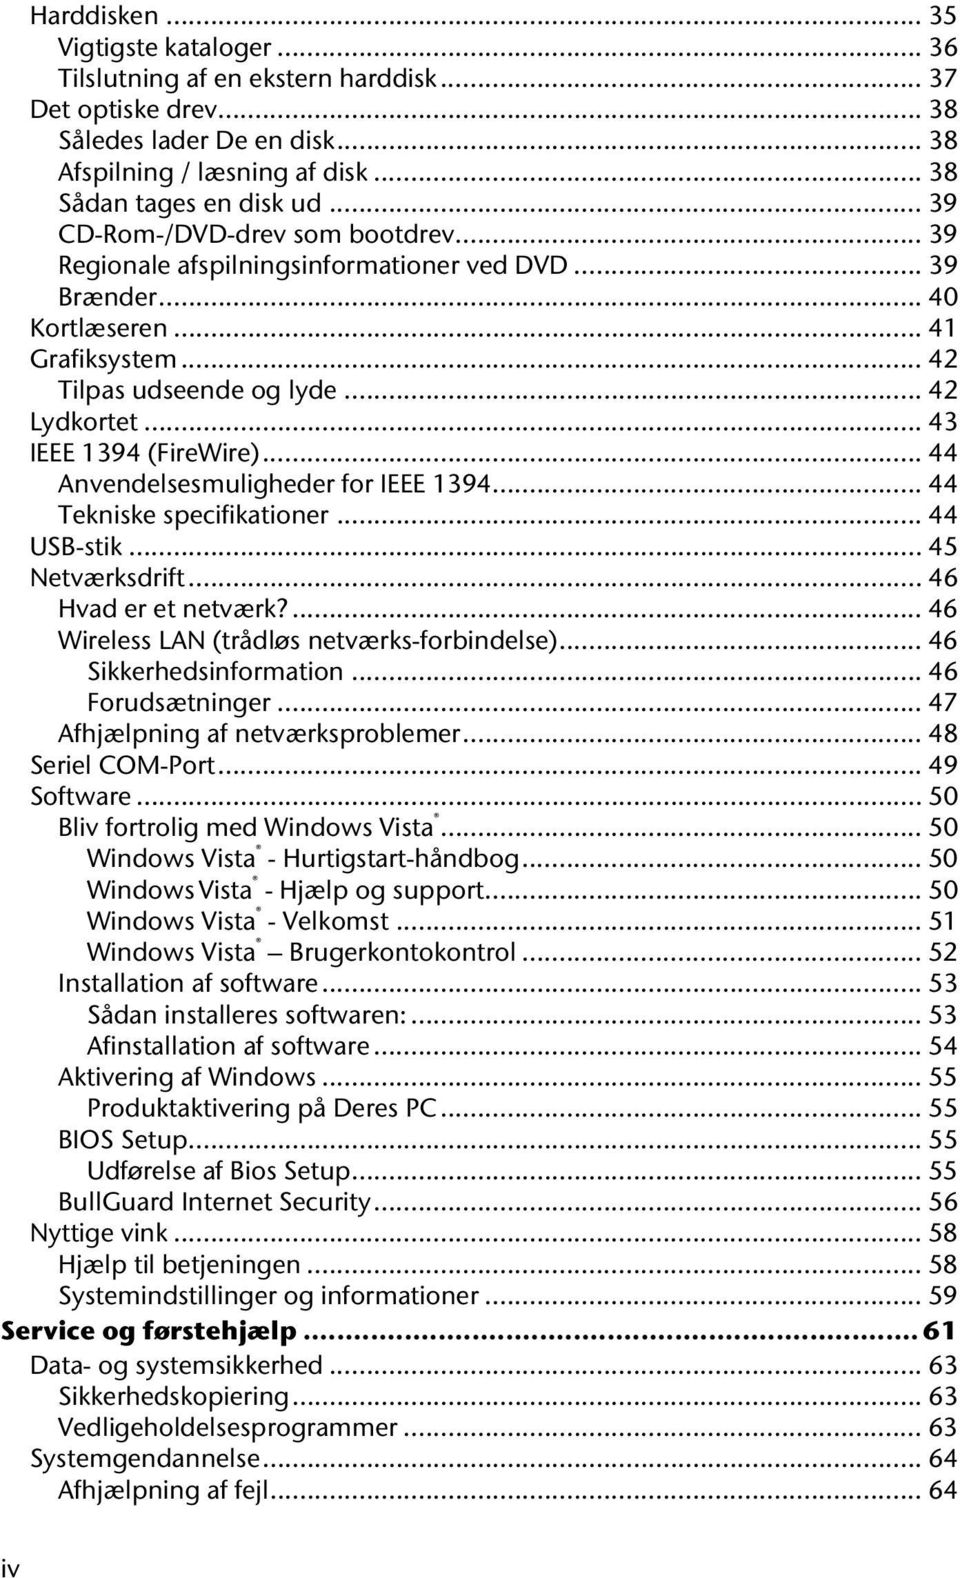 .. 43 IEEE 1394 (FireWire)... 44 Anvendelsesmuligheder for IEEE 1394... 44 Tekniske specifikationer... 44 USB-stik... 45 Netværksdrift... 46 Hvad er et netværk?